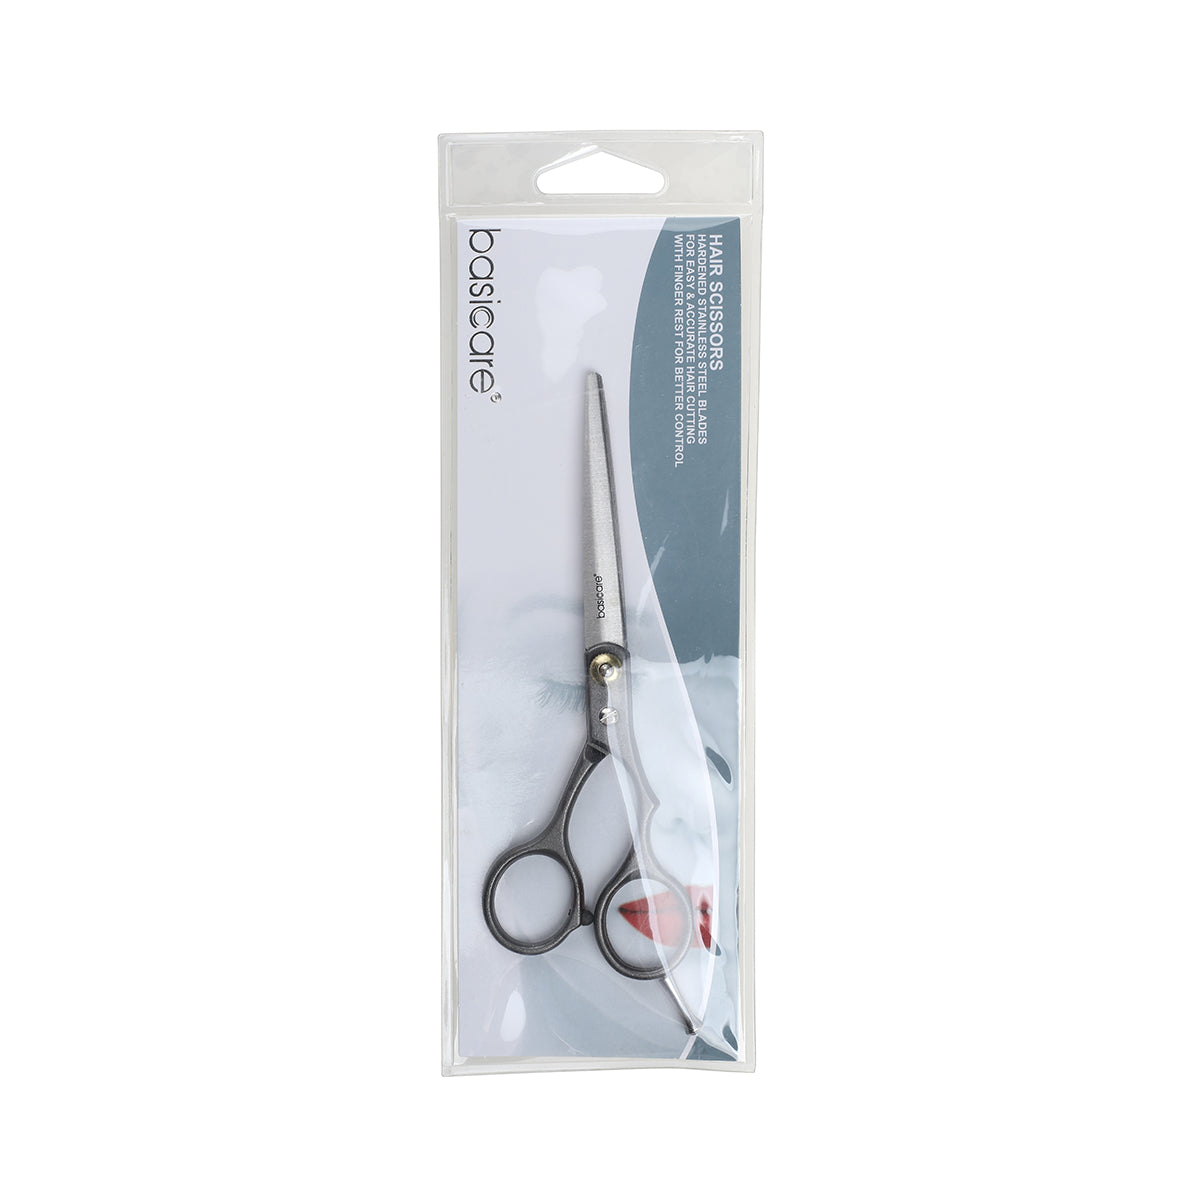 Basicare Stainless Steel Hairdressing Scissor (7616125862112)